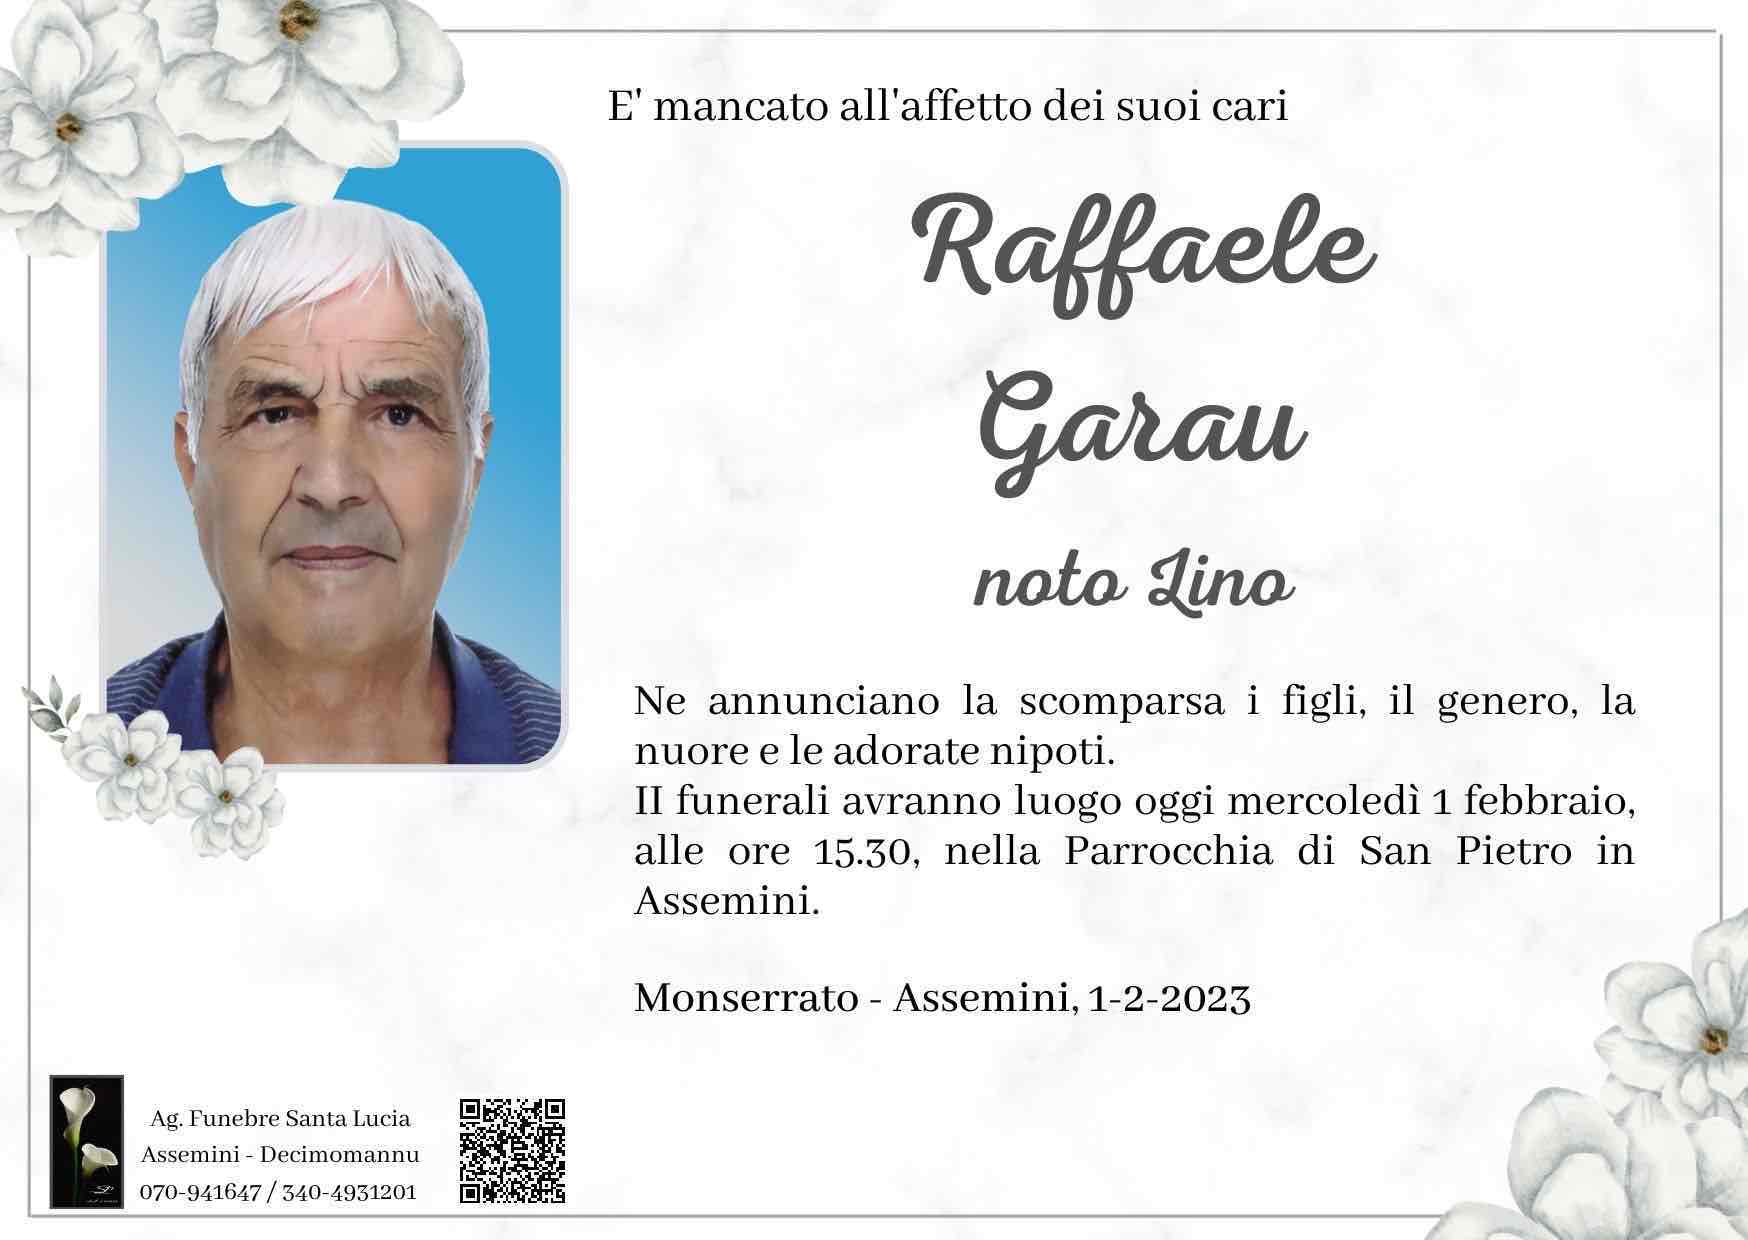 Raffaele Garau